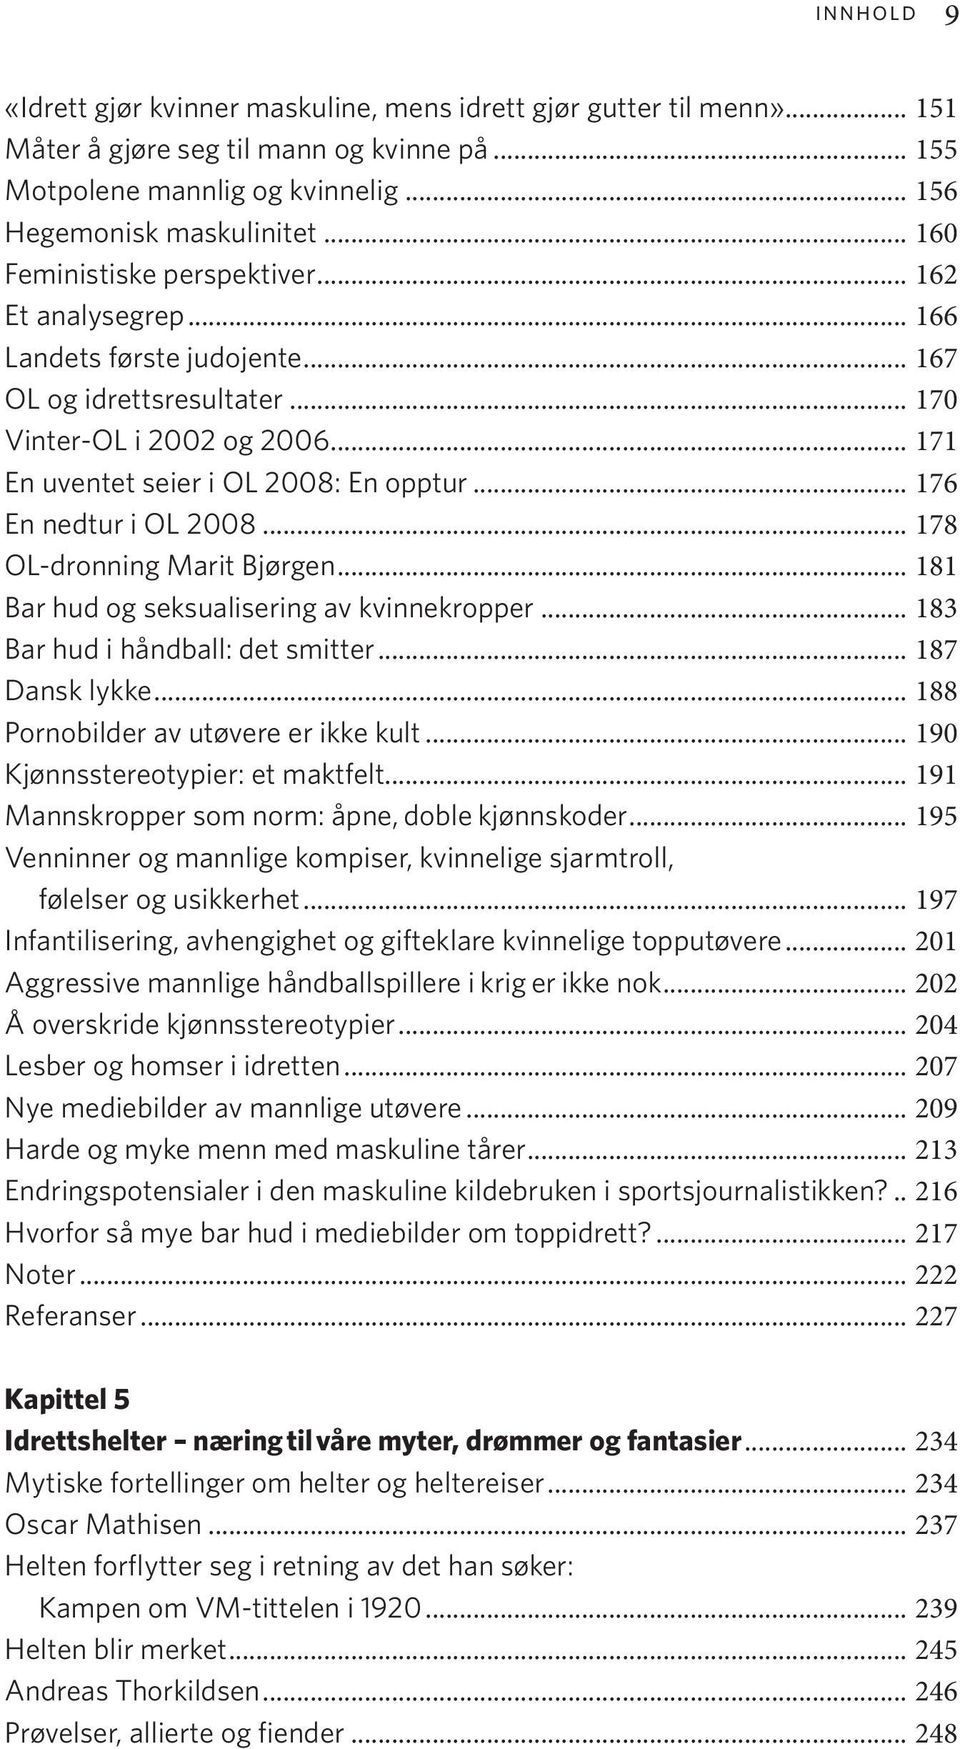 .. 176 En nedtur i OL 2008... 178 OL-dronning Marit Bjørgen... 181 Bar hud og seksualisering av kvinnekropper... 183 Bar hud i håndball: det smitter... 187 Dansk lykke.